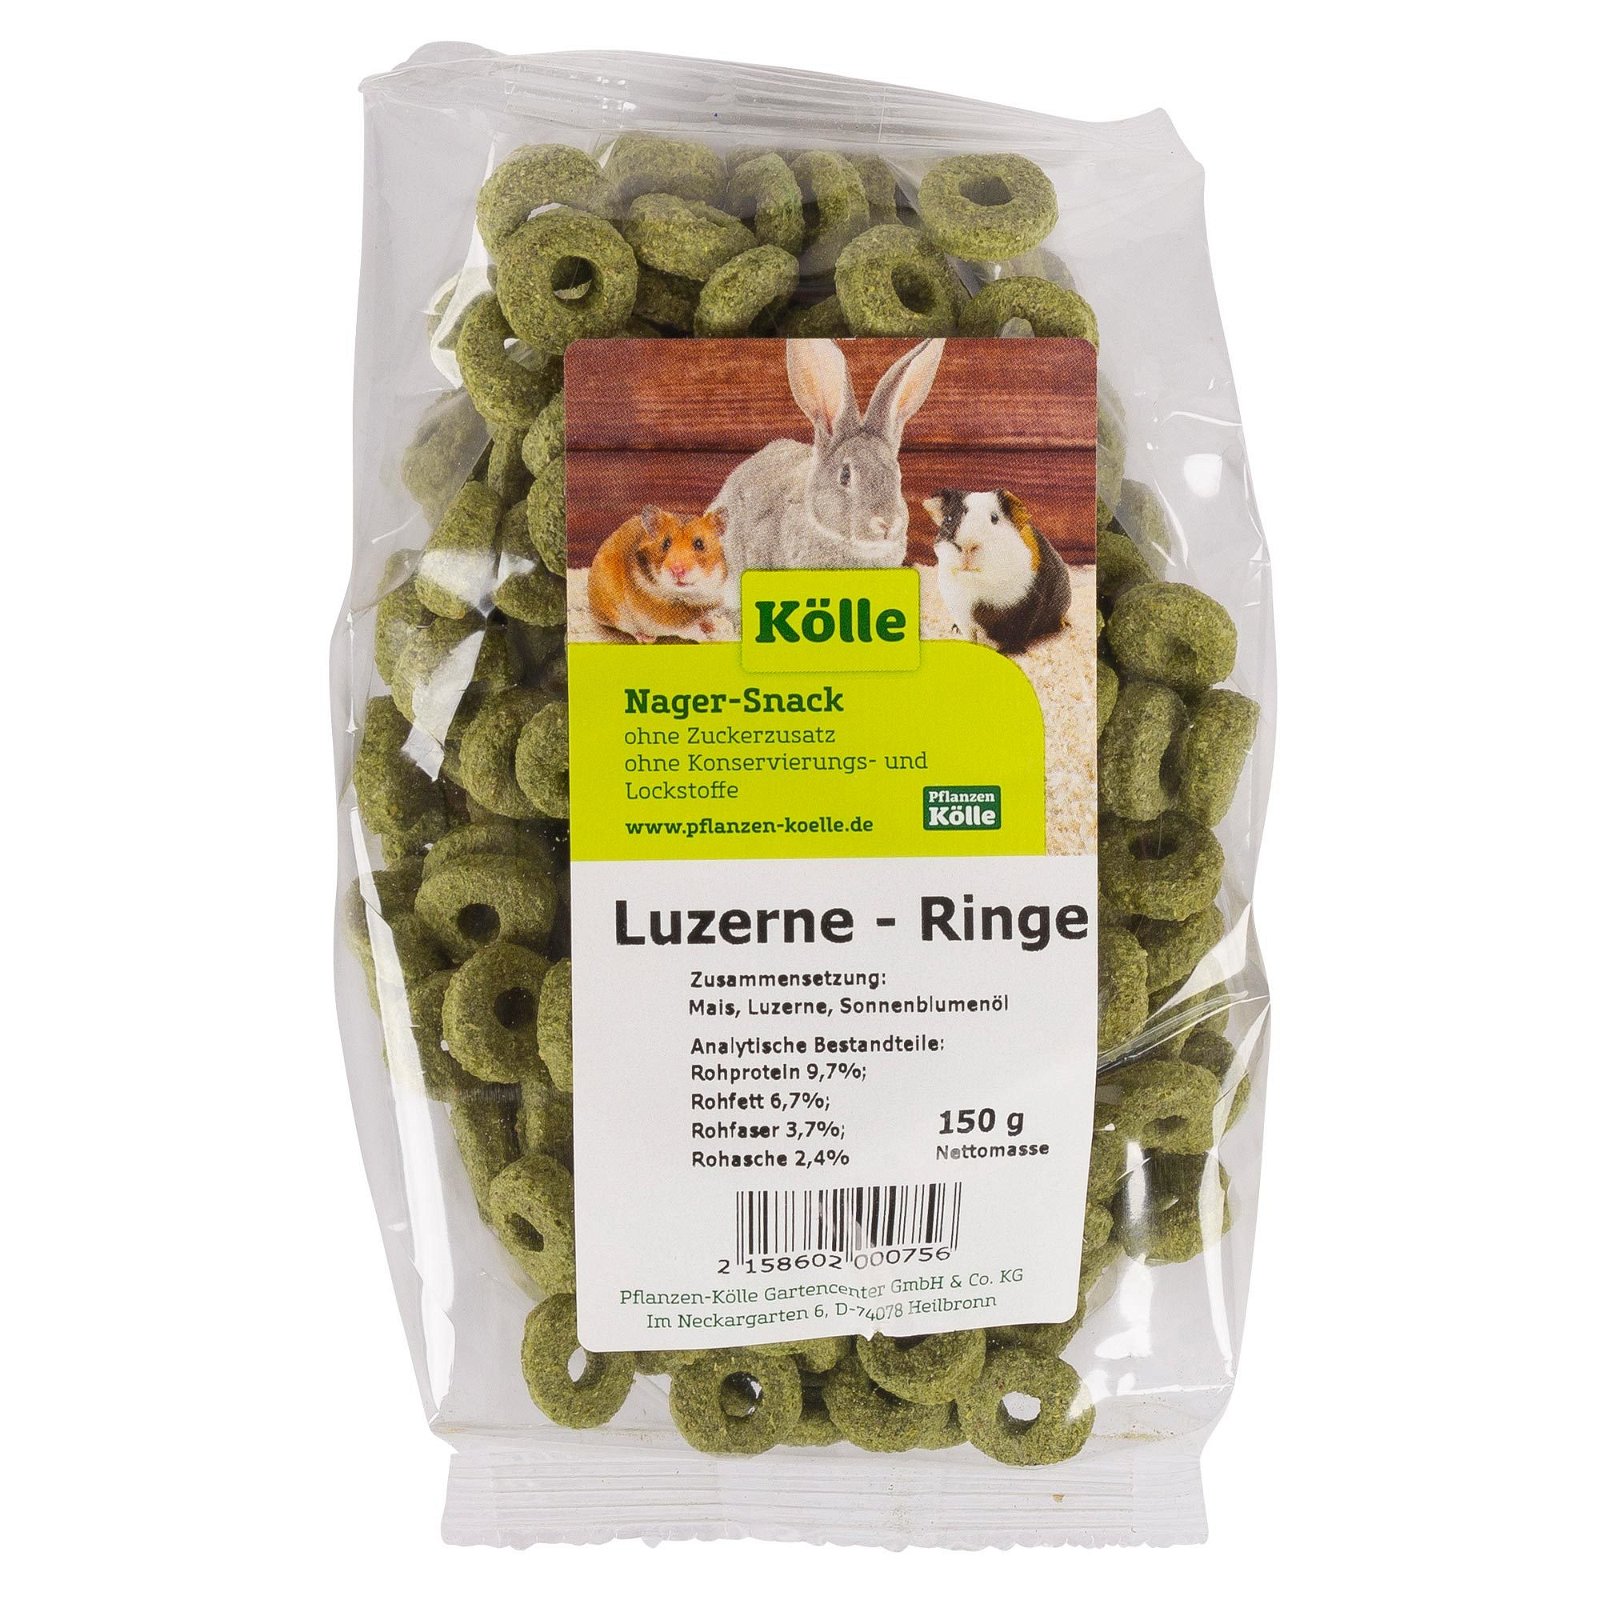 Kölle's Beste Luzerne-Ringe, 150 g